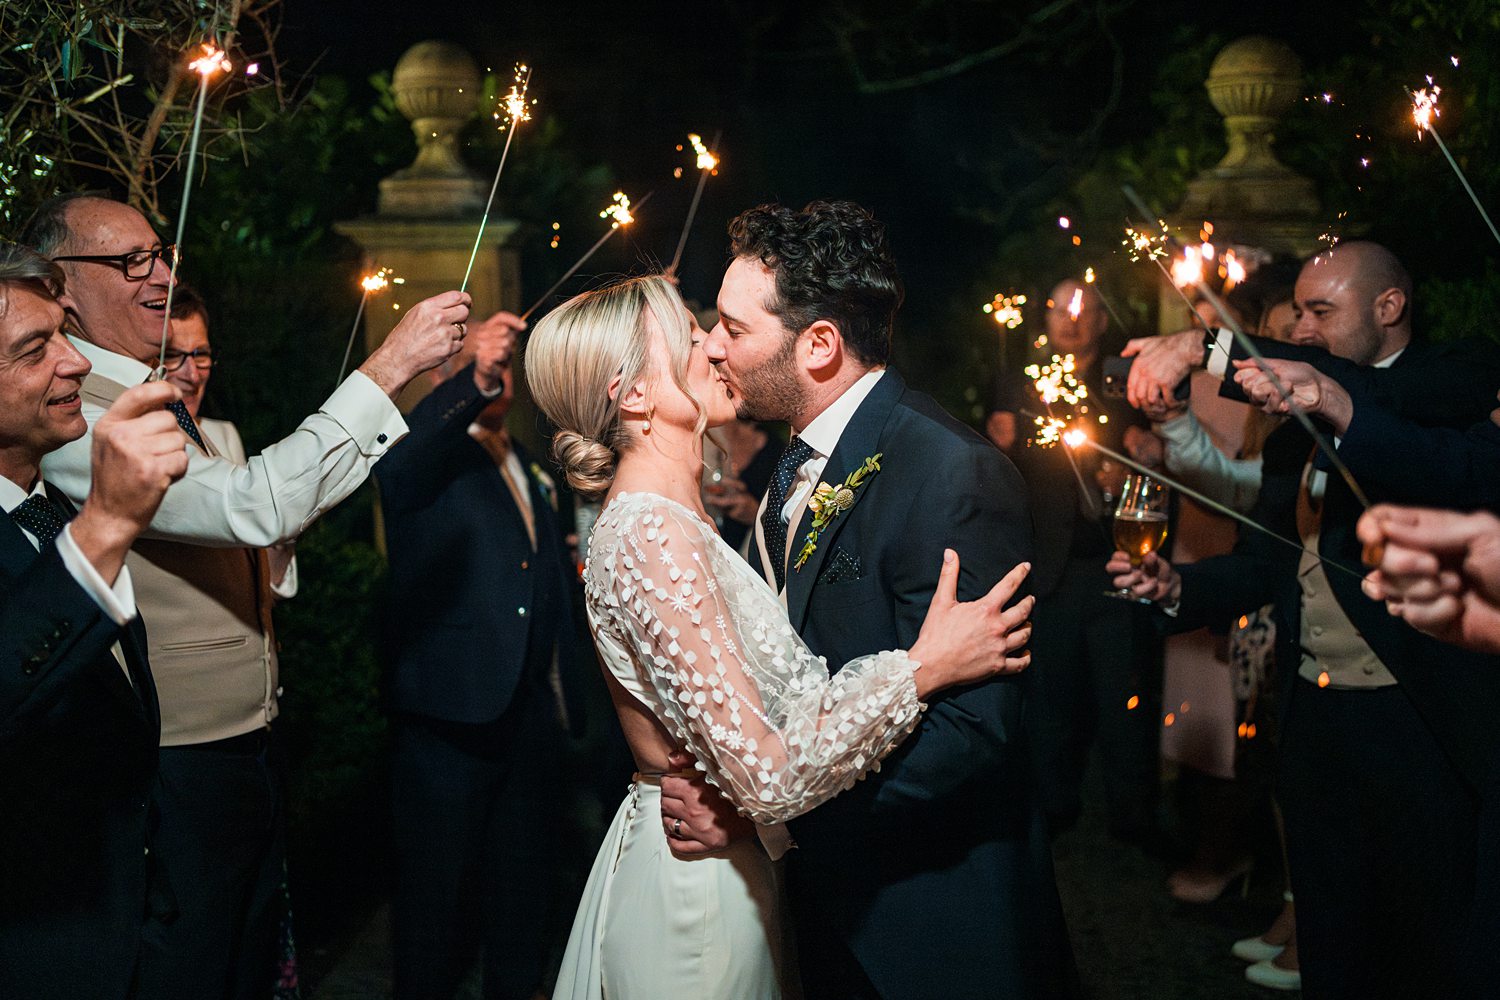 Couple kissing amid sparkler celebration at night wedding.